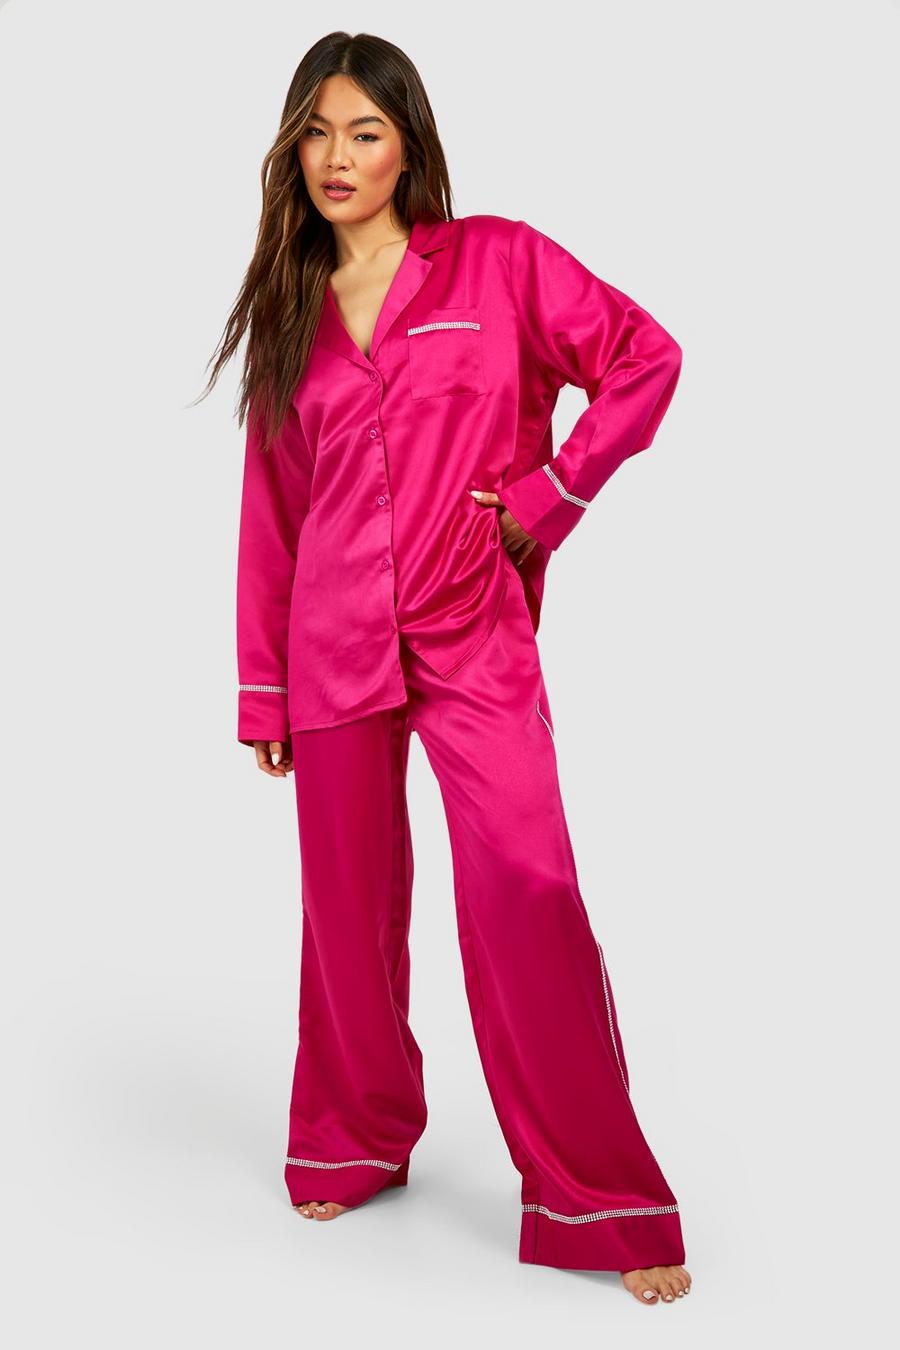 Conjunto Premium de pantalón y camisa con incrustaciones en el filo, Hot pink